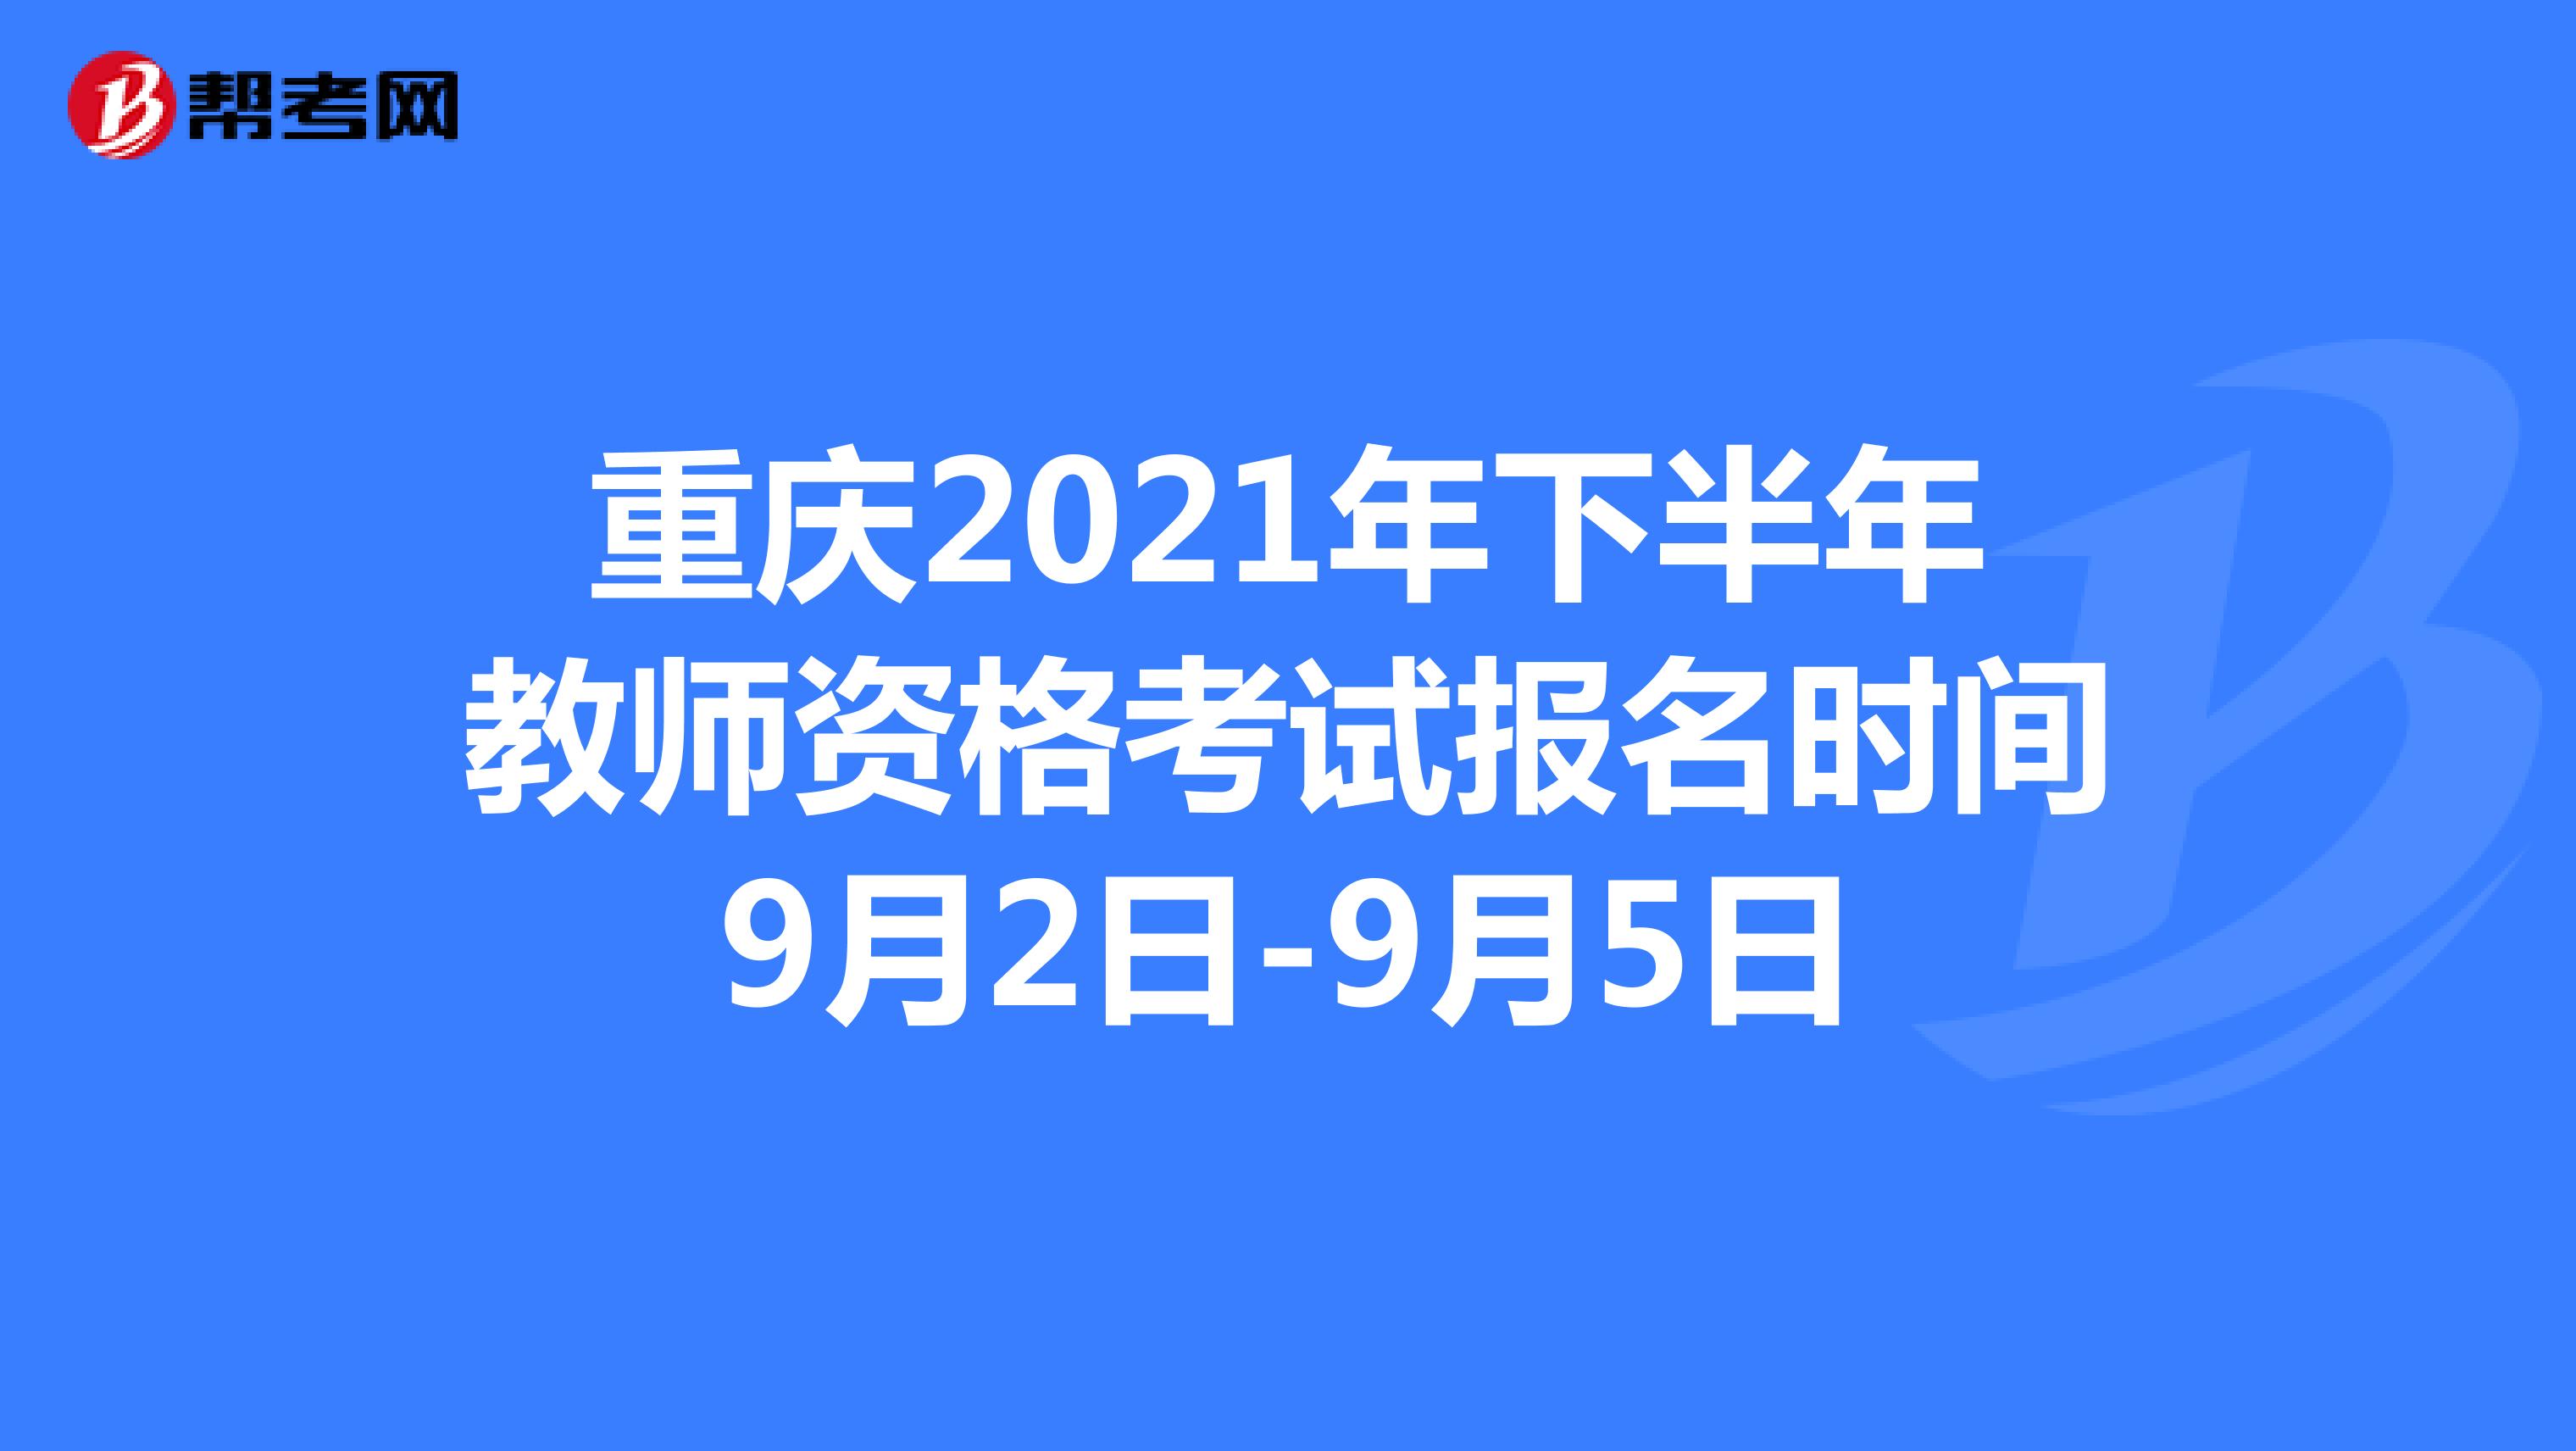 重庆2021年下半年教师资格考试报名时间9月2日-9月5日